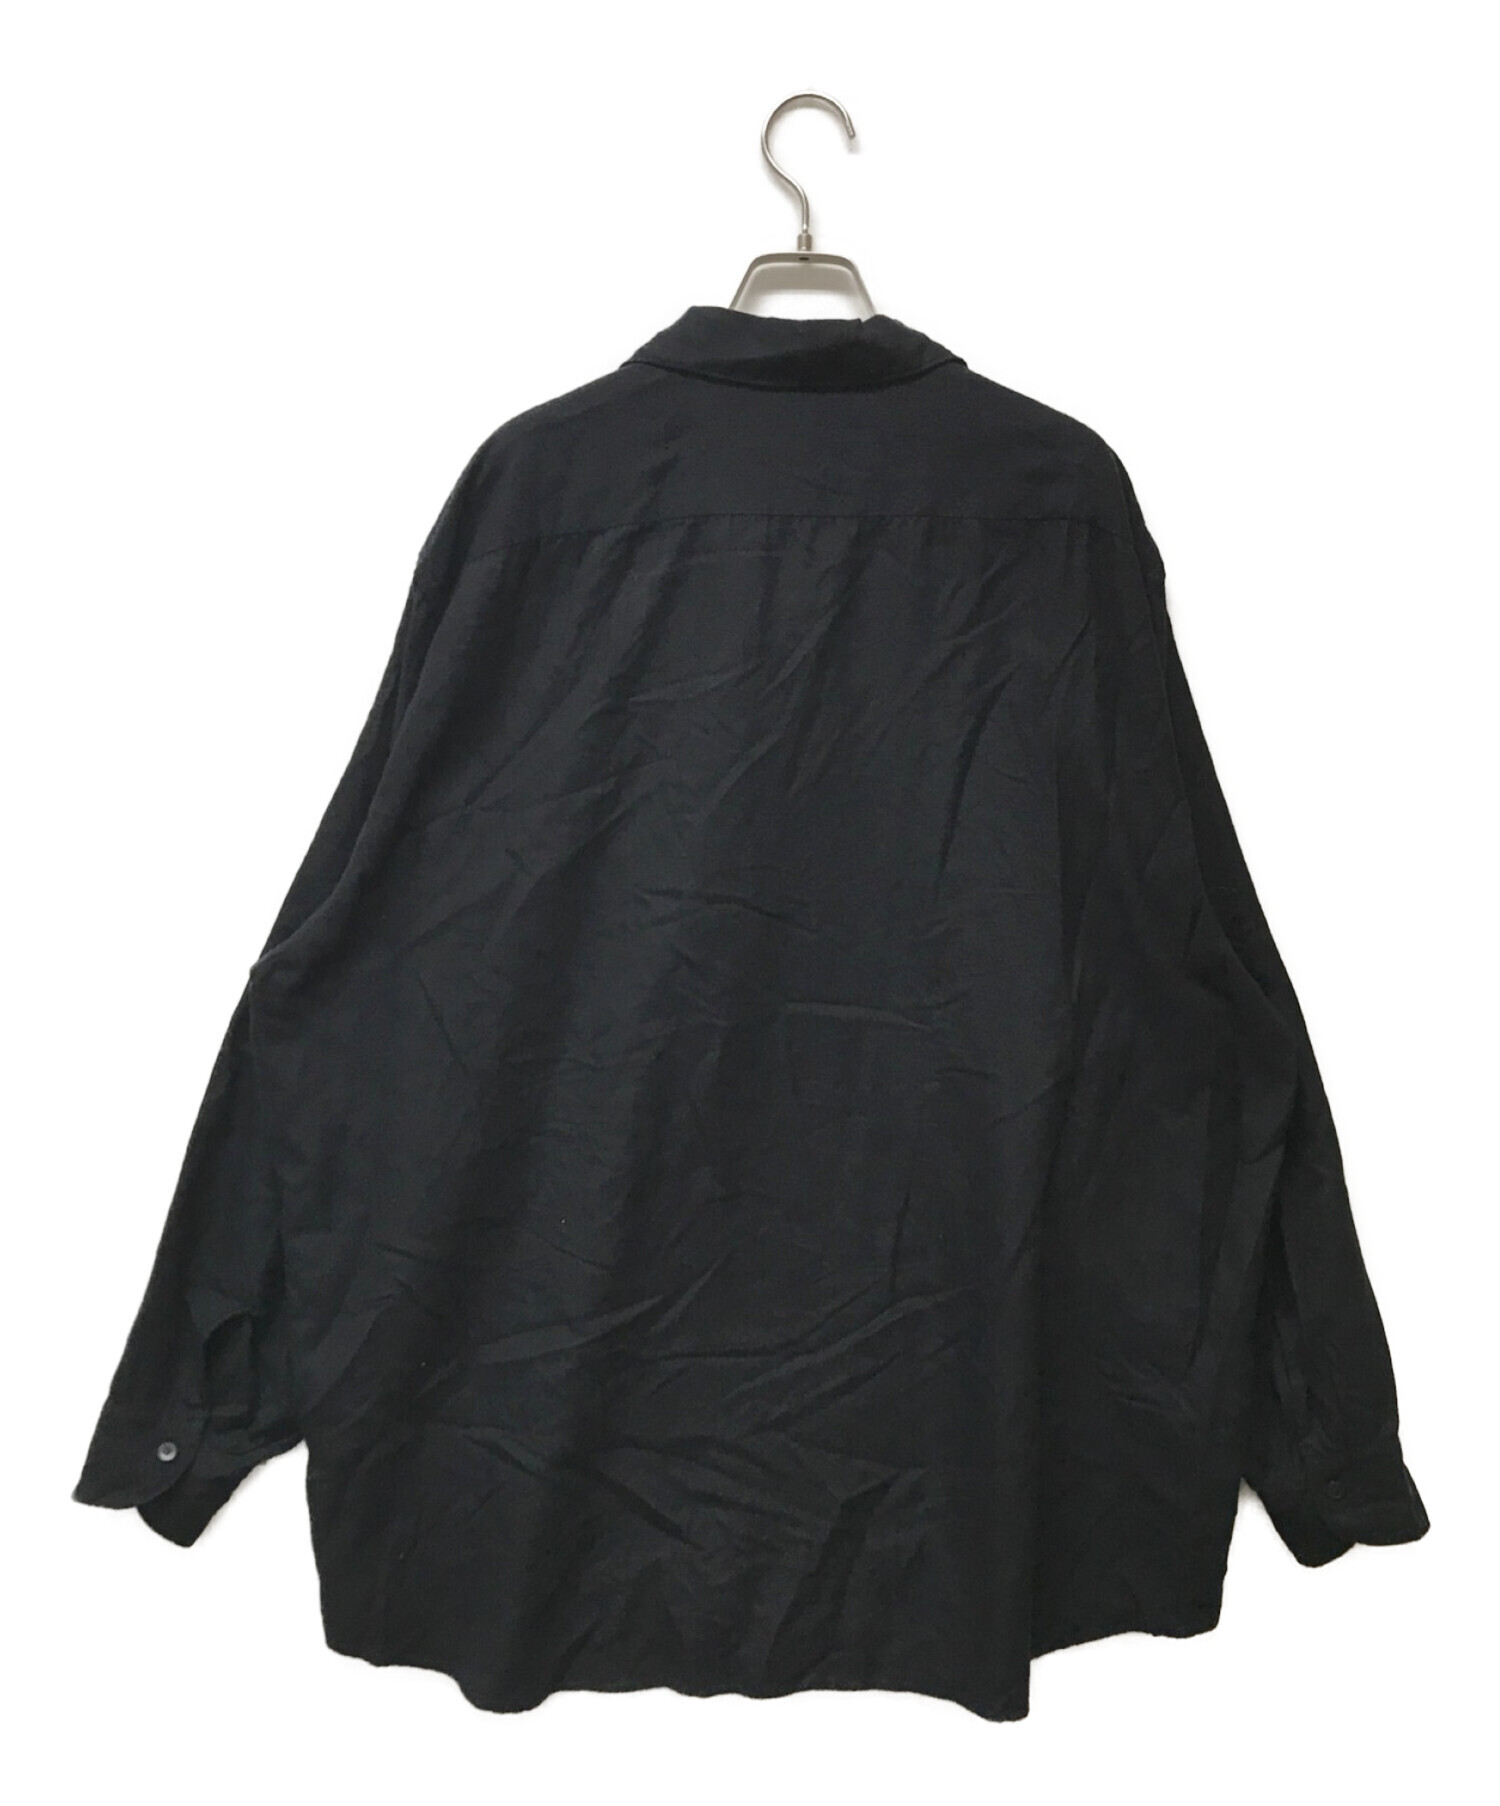 COMOLI (コモリ) シルクネルスキッパーシャツ ネイビー サイズ:3